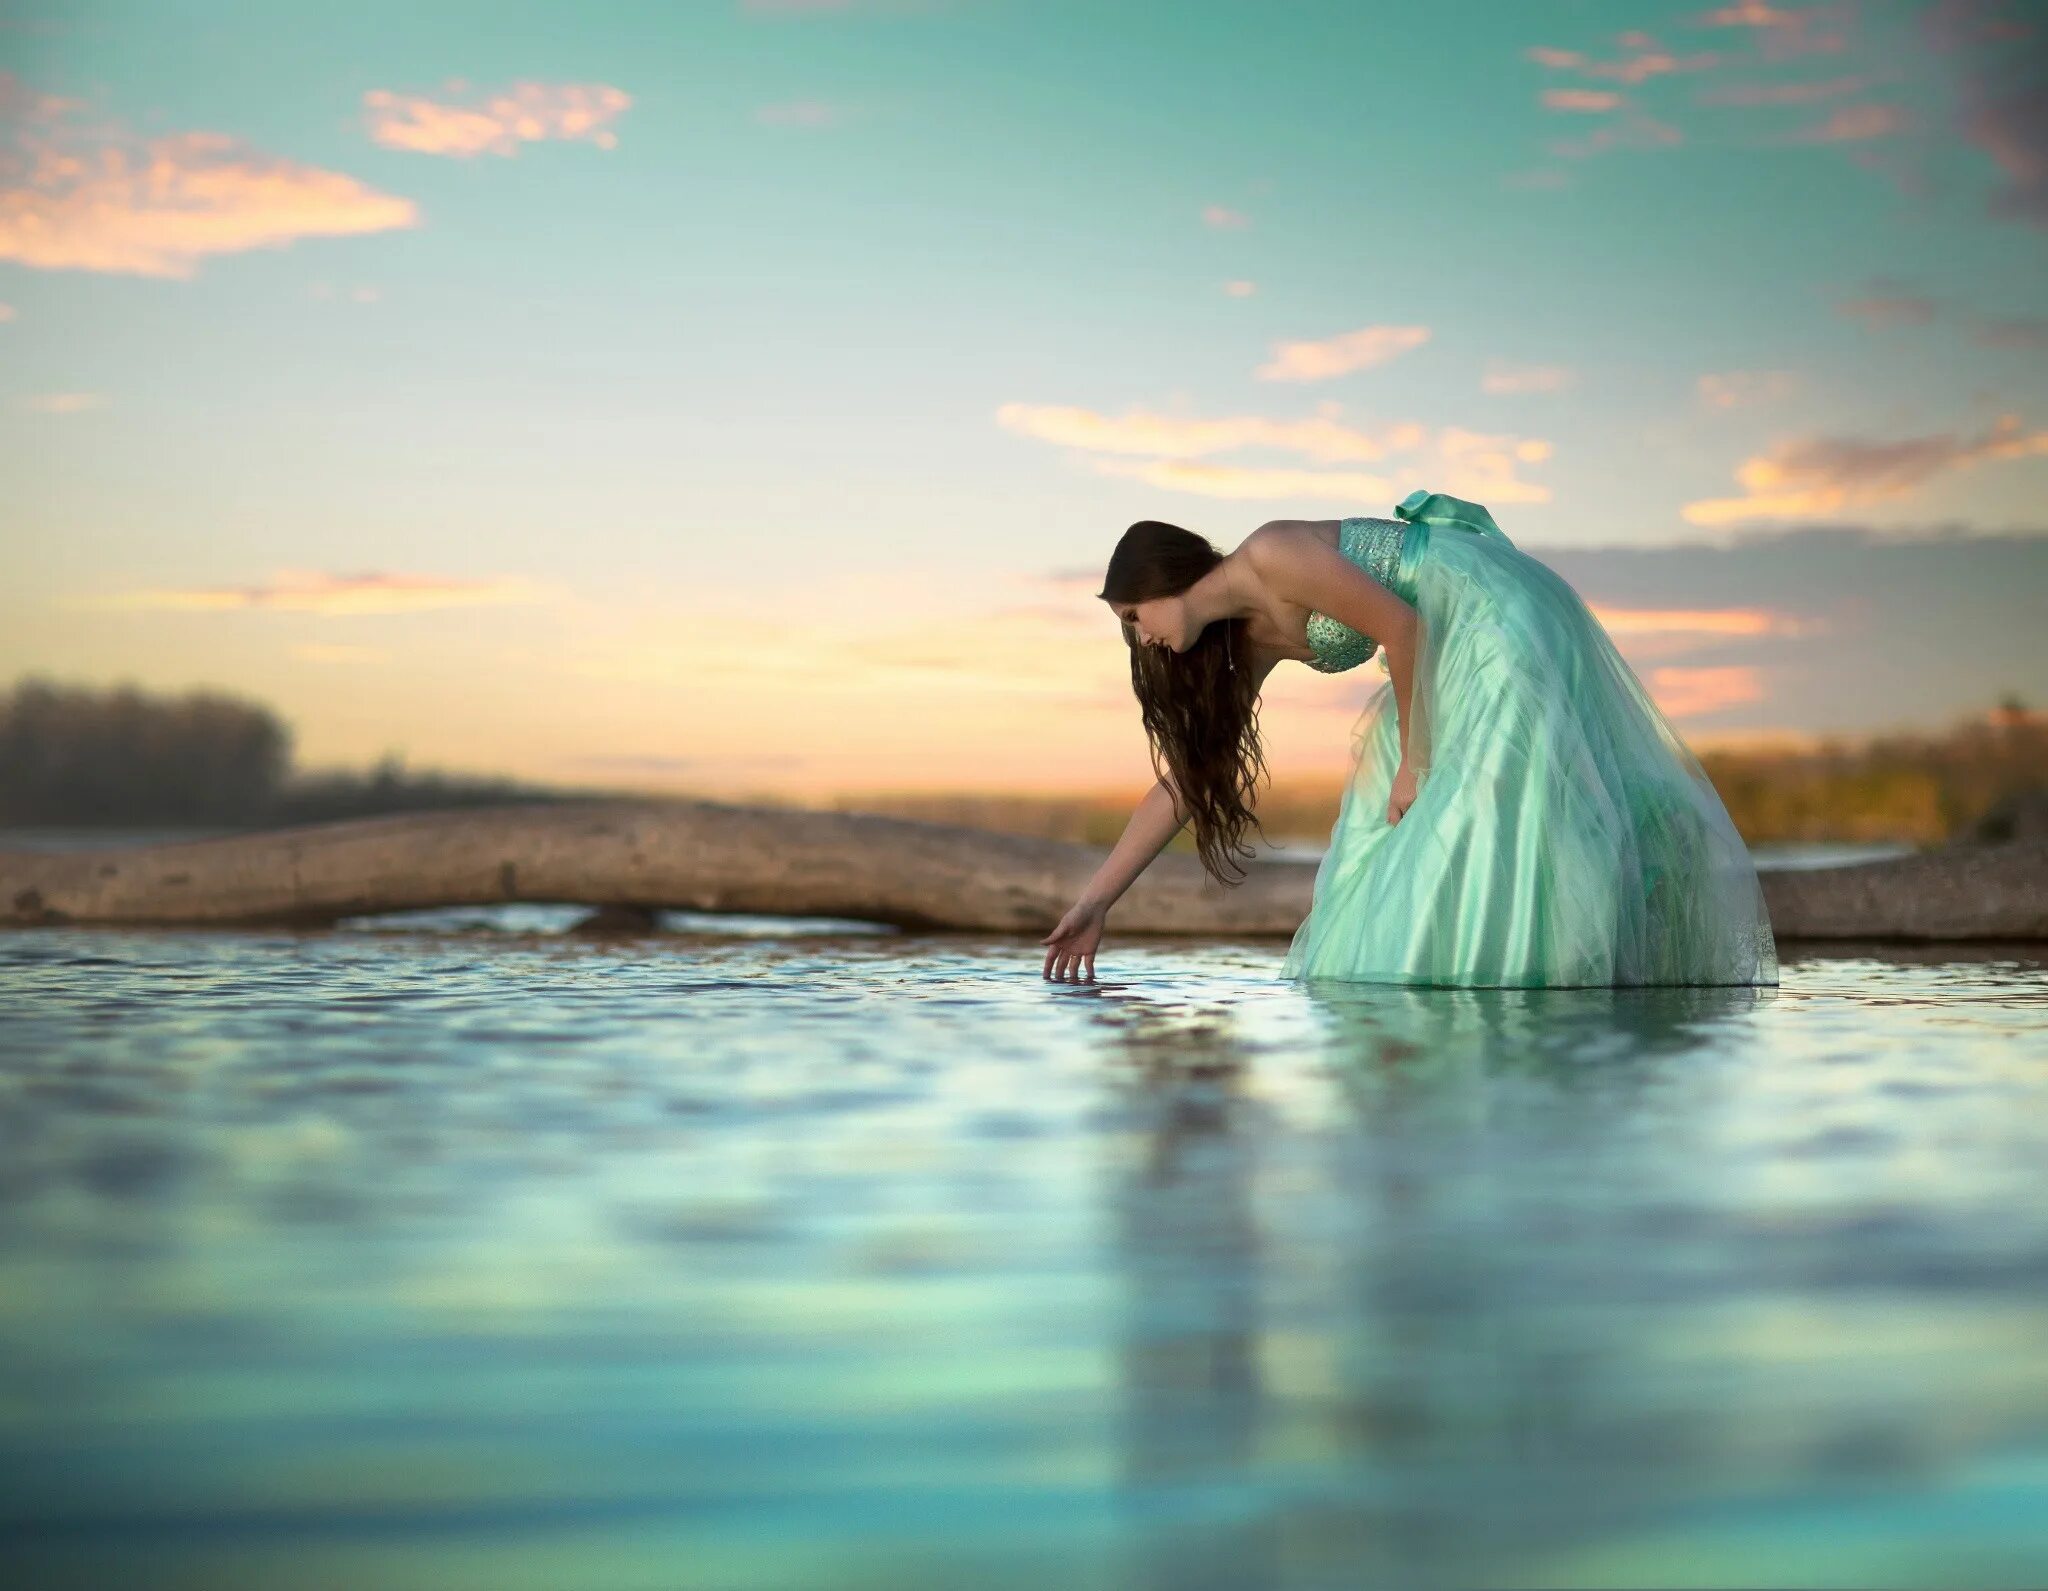 Фотосессия в воде в платье. Девушка в воде. Женщина вода. Фотосессия в озере в платье в воде. Случайно зашла девушка